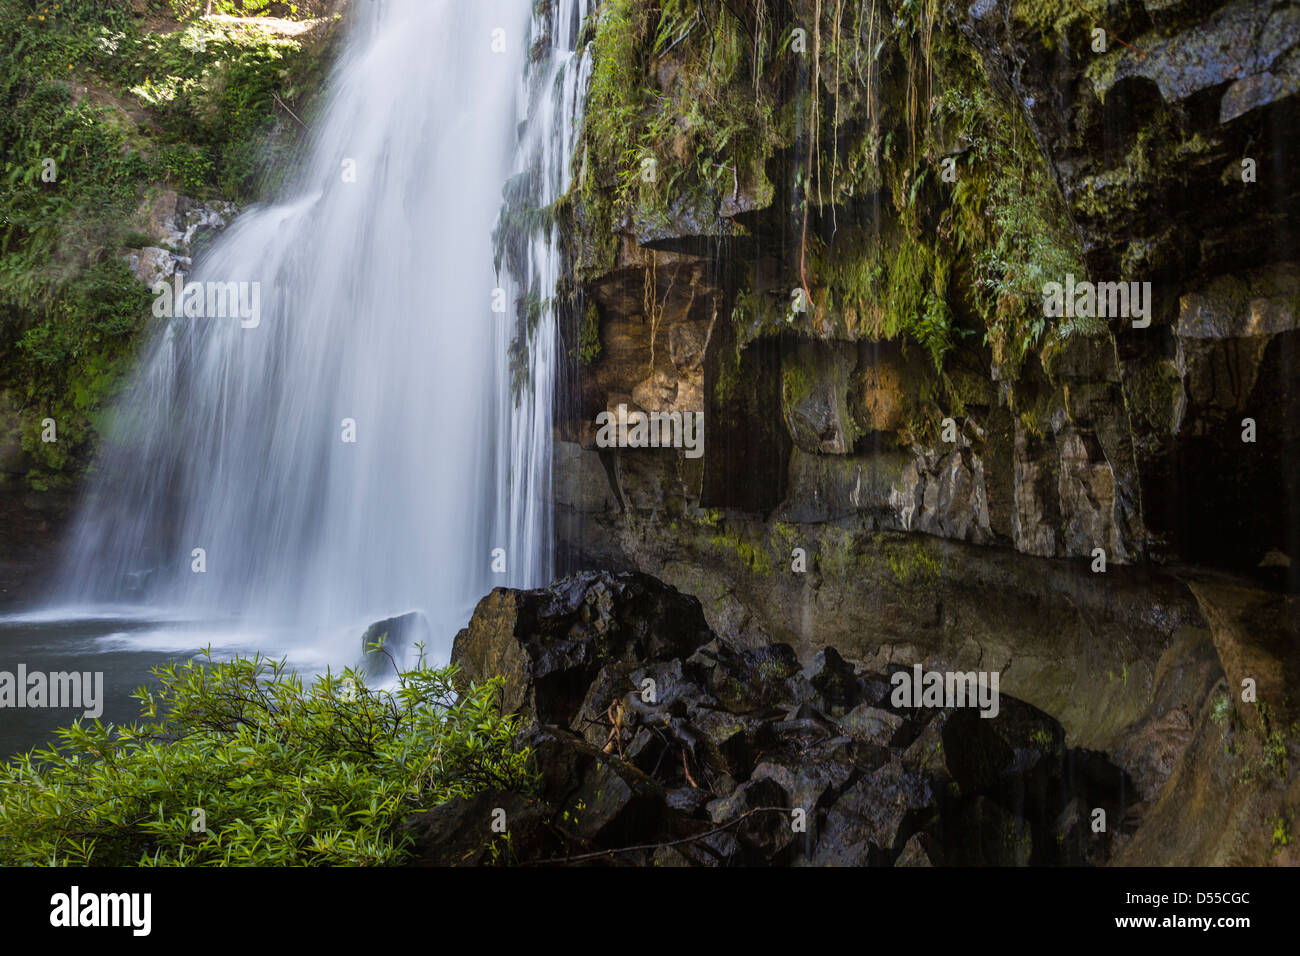 Einer der Costa Rica versteckte von Edelsteine, die Llanos de Cortez Wasserfall in der Provinz Guanacaste, Costa Rica. Stockfoto